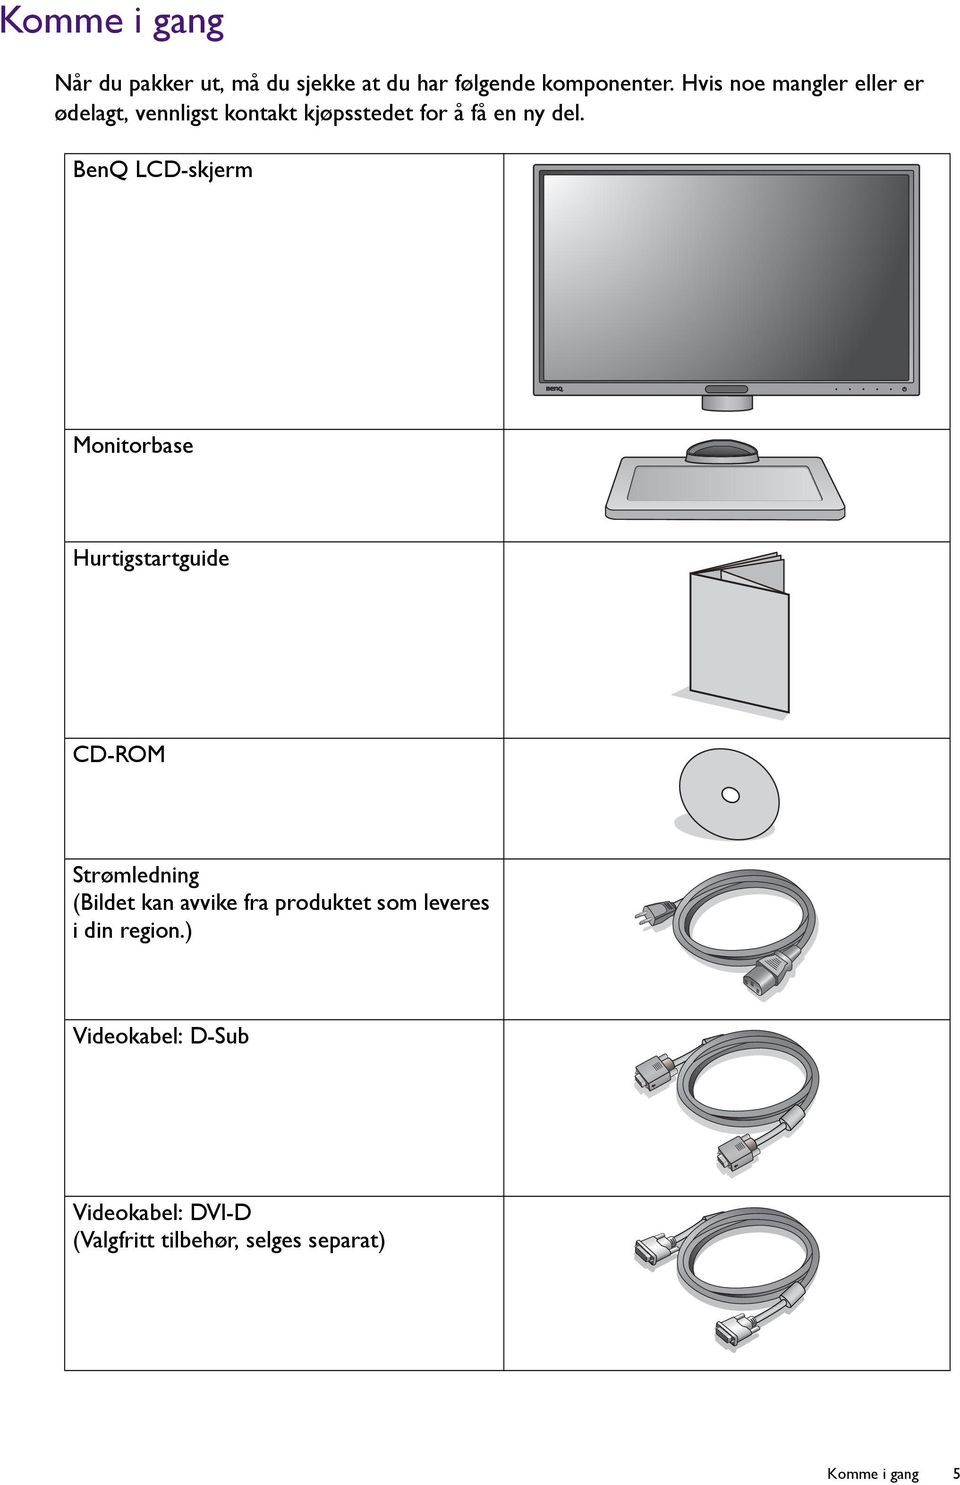 BenQ LCD-skjerm Monitorbase Hurtigstartguide CD-ROM Strømledning (Bildet kan avvike fra